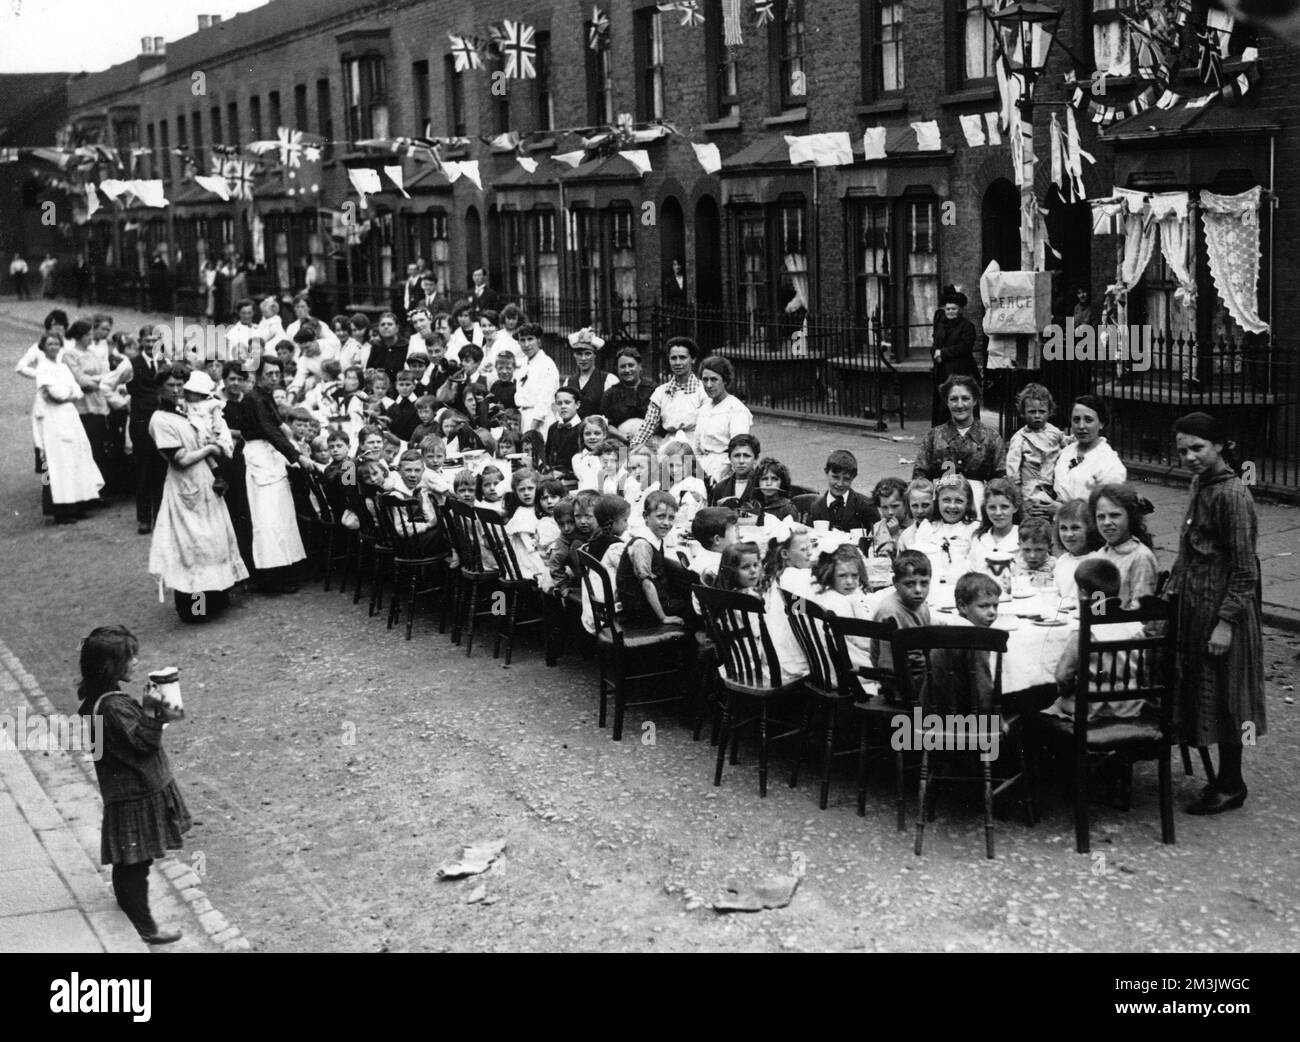 Teeparty in einer Straße in Londons East End, um das Ende des Ersten Weltkriegs im Jahr 1918 zu feiern. Kinder sitzen an einem langen Tisch, während Eltern (hauptsächlich Frauen) Essen servieren. Bunting, Flaggen und Banner sind entlang der Straße zu sehen. Datum: 1918 Stockfoto